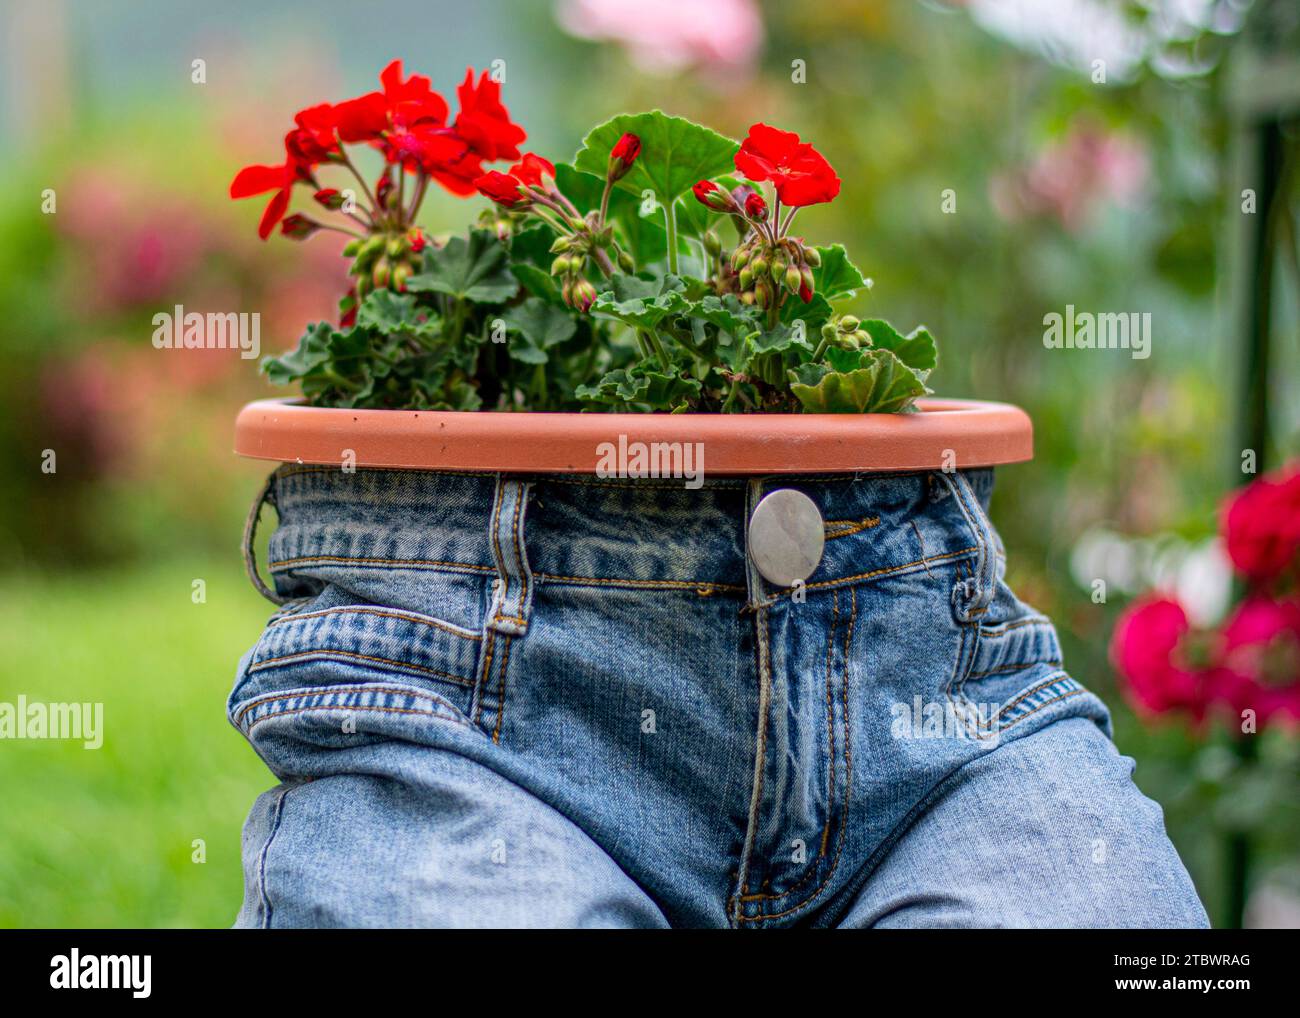 Jardinière bleu jeans avec fleurs rouge écarlate Pelargonium peltatum. Décoration de jardin vintage Banque D'Images